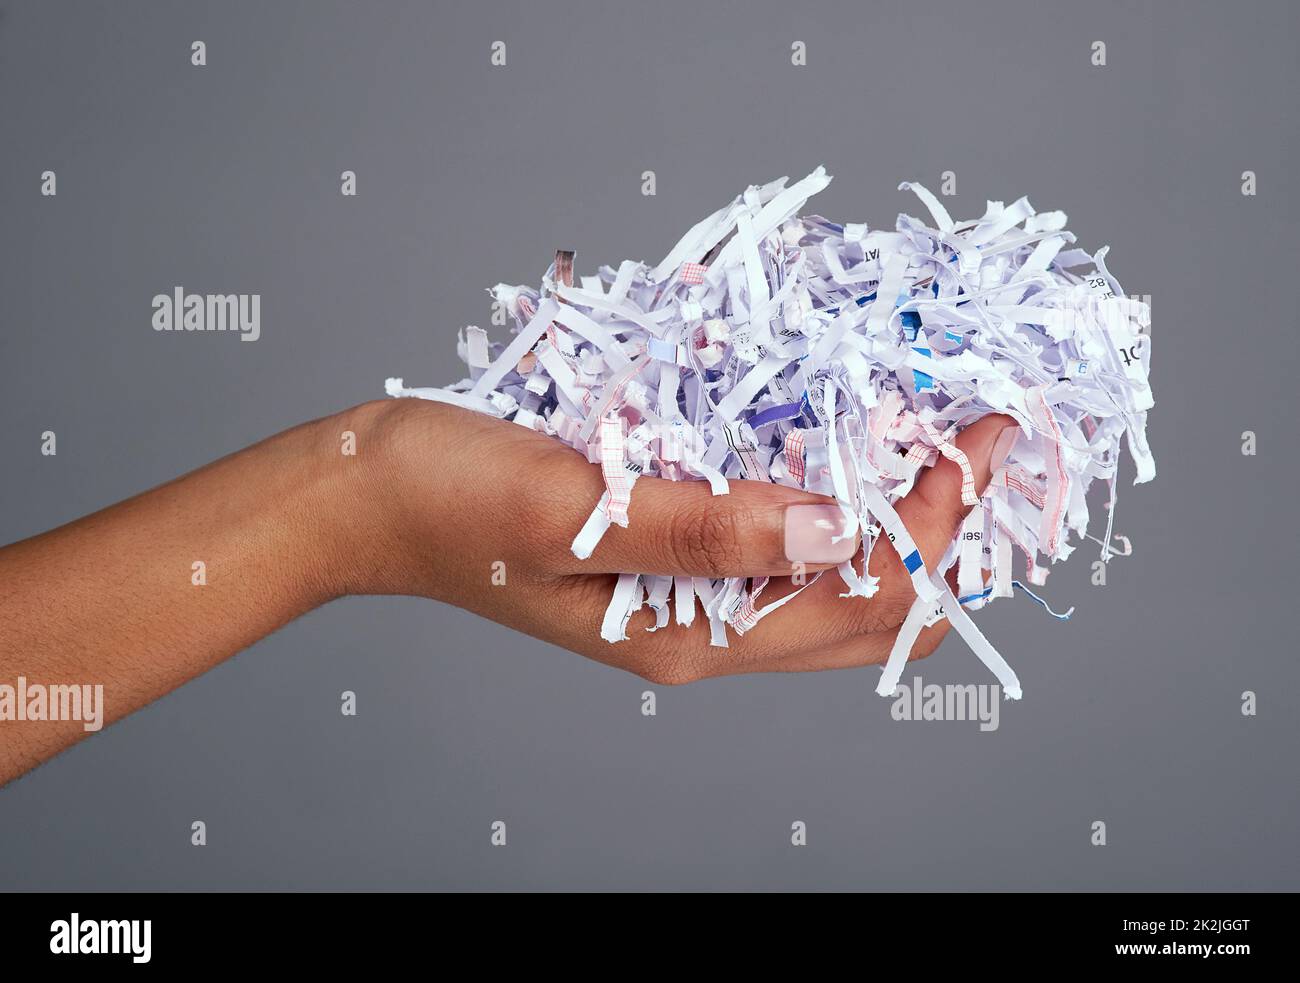 Protégez vos informations. Photo de studio d'une main de femme tenant une pile de papier déchiqueté sur un fond gris. Banque D'Images